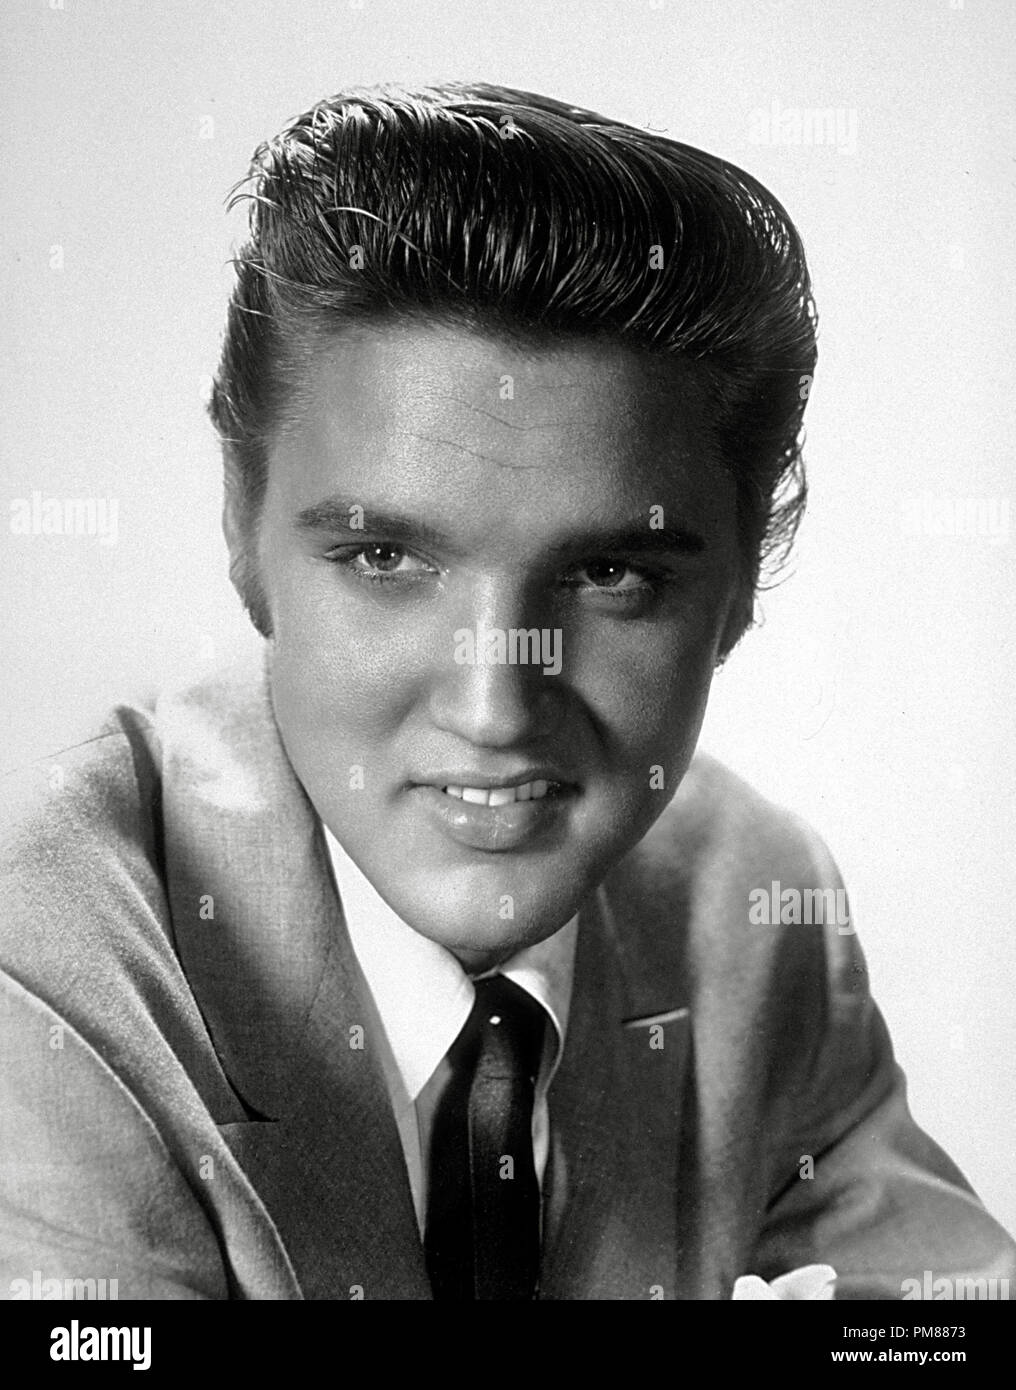 (Archivage classique du cinéma - Rétrospective) Elvis Presley Elvis Presley, vers 1956 référence #  31616 036THA Banque D'Images